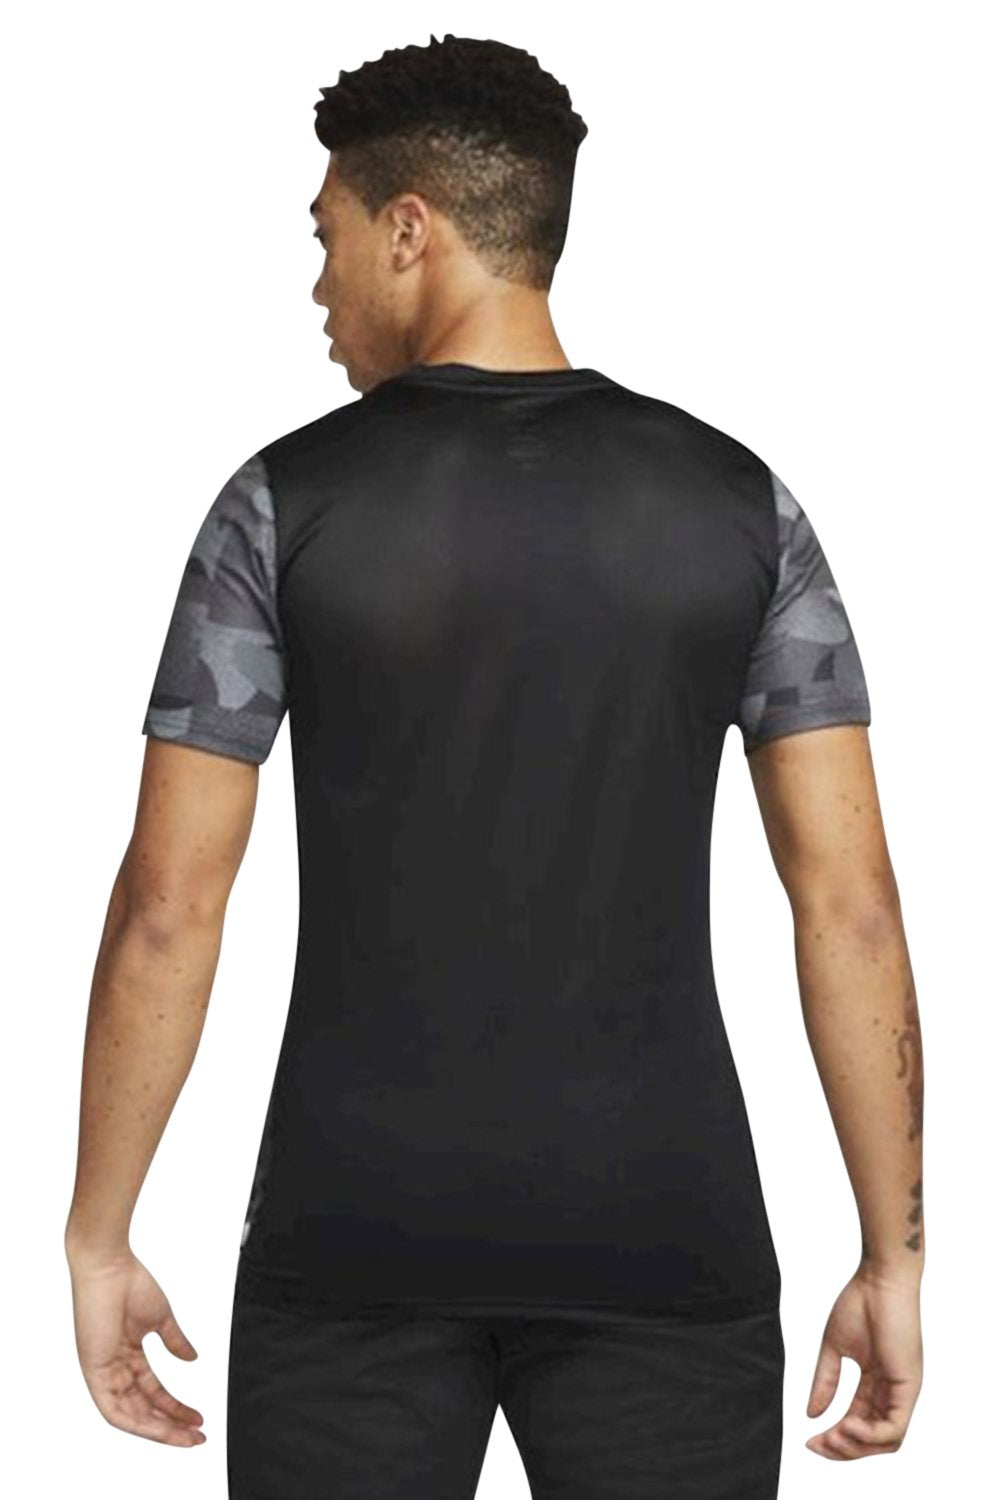 Men's Black Nike F.C Dri-Fit Training T-Shirt